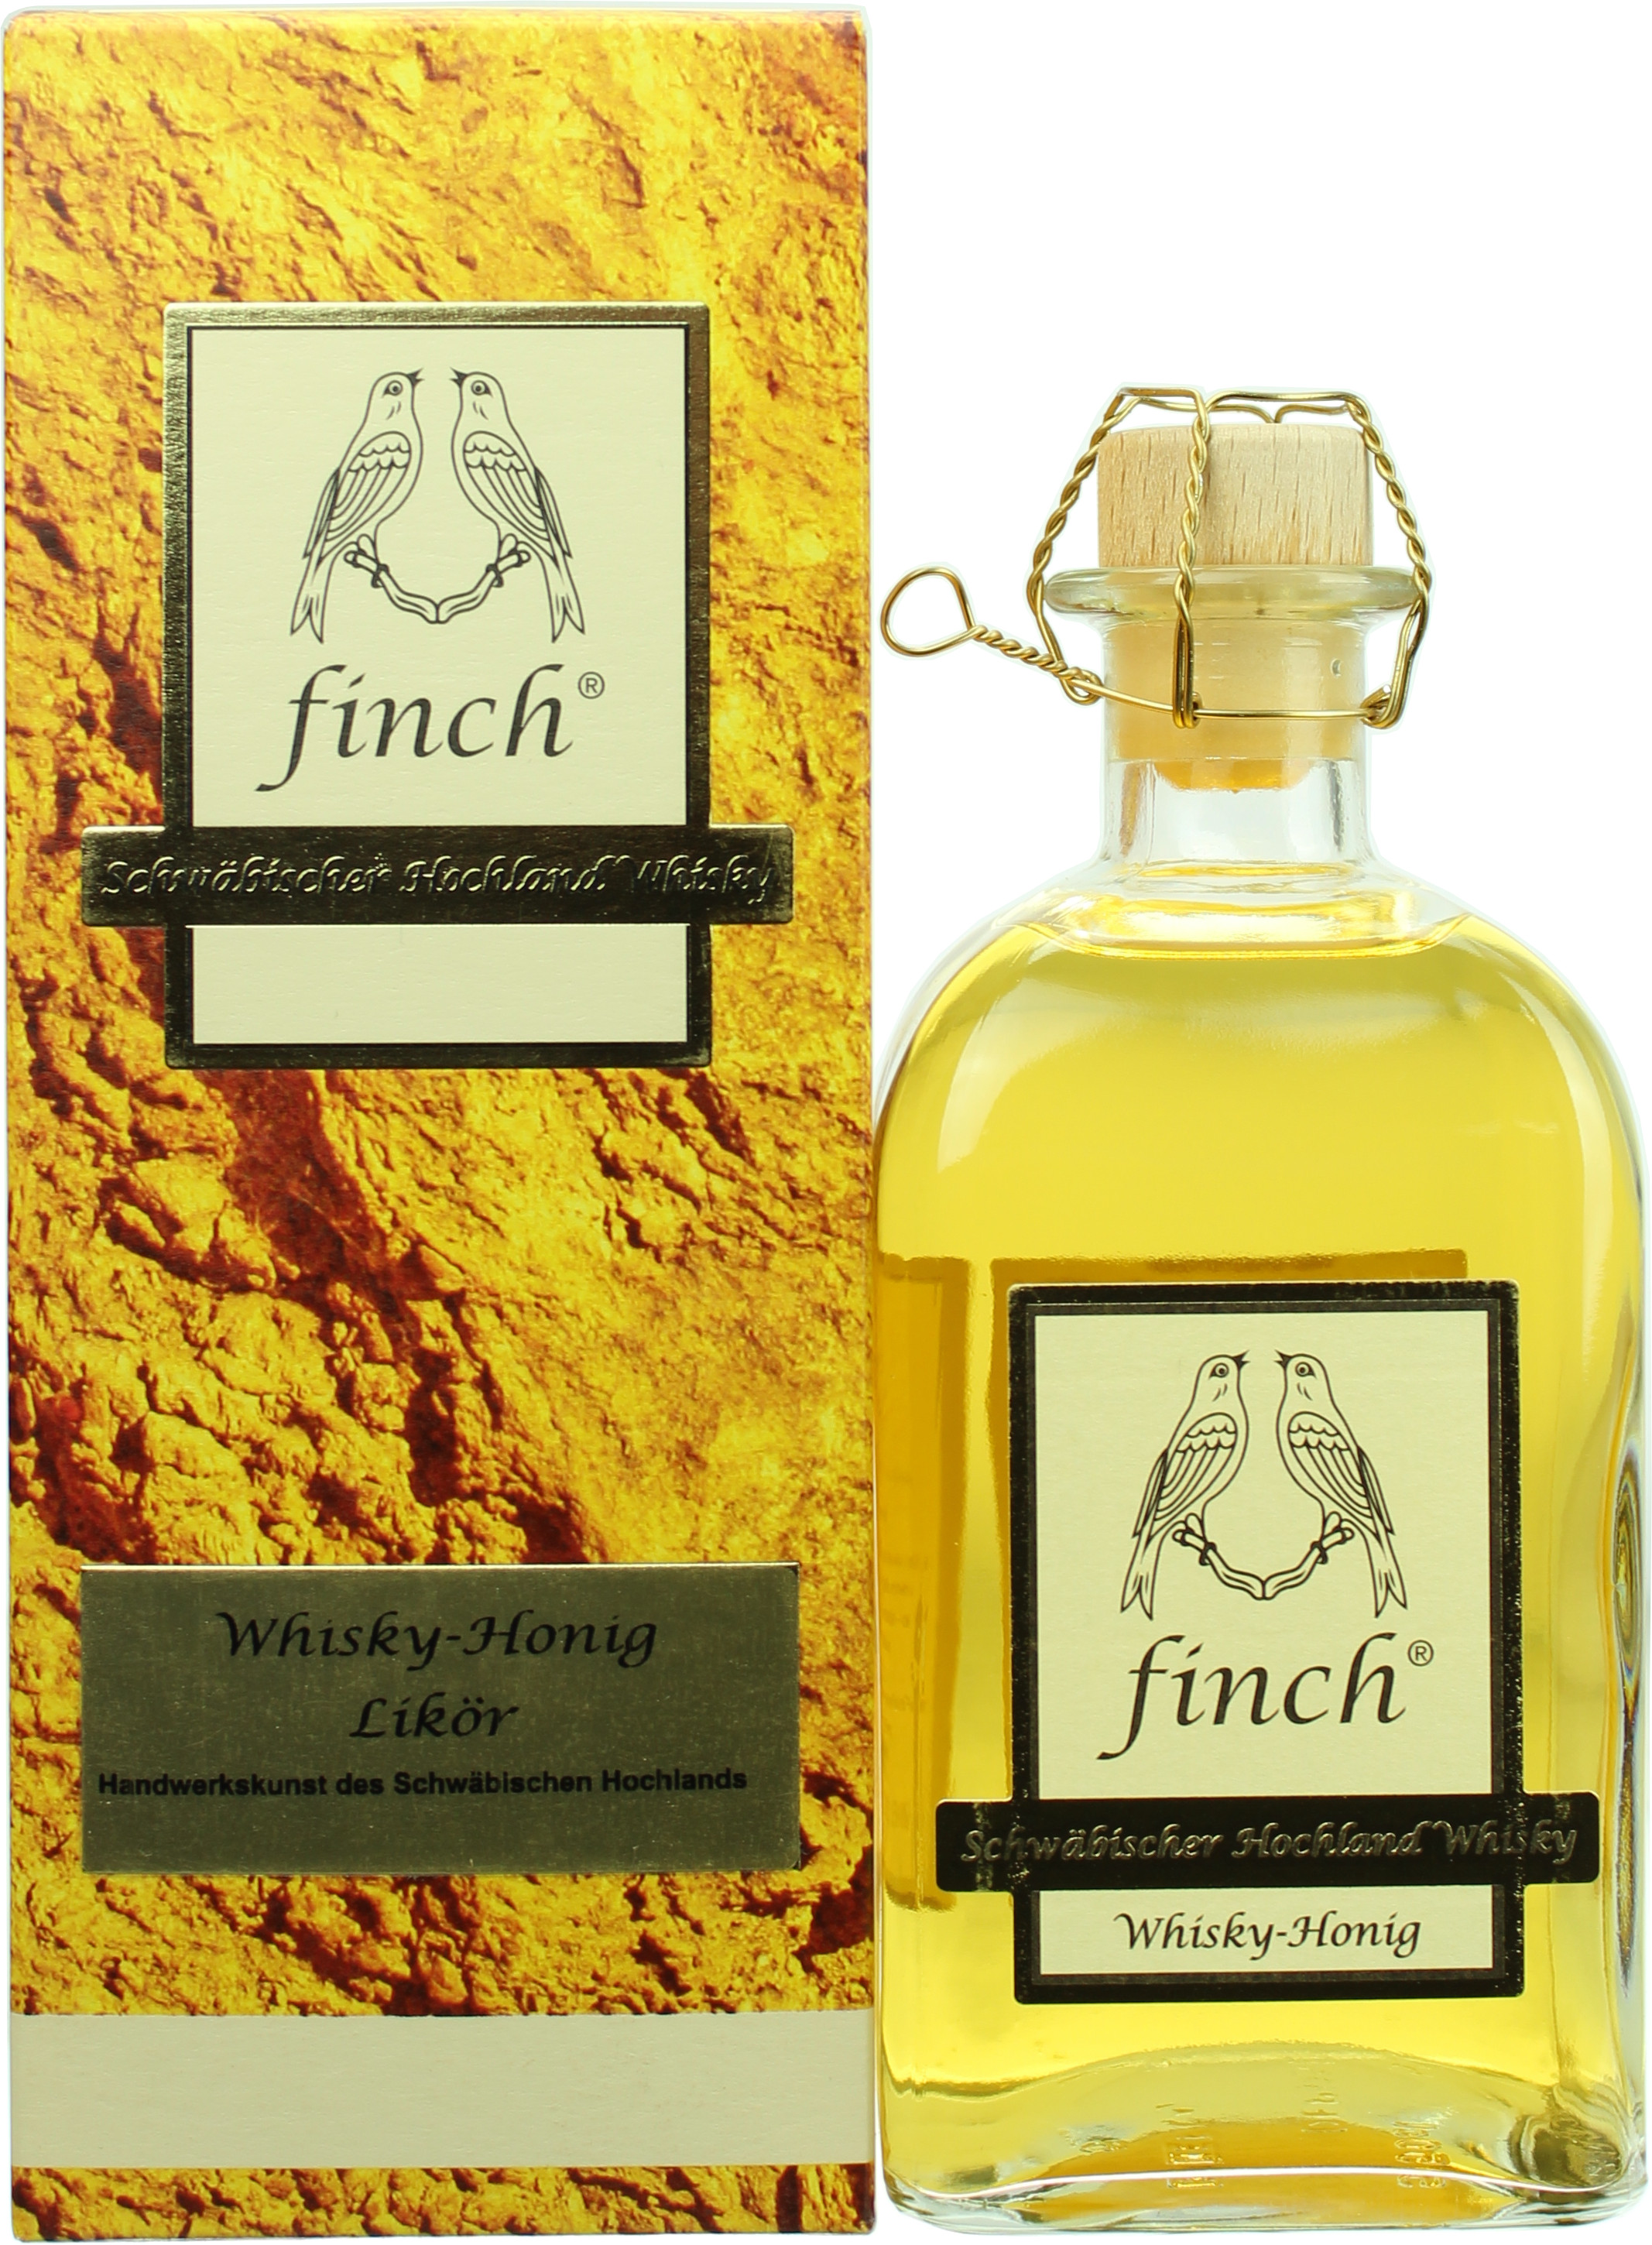 Finch Whisky Honig Likör 27.0% 0,5l